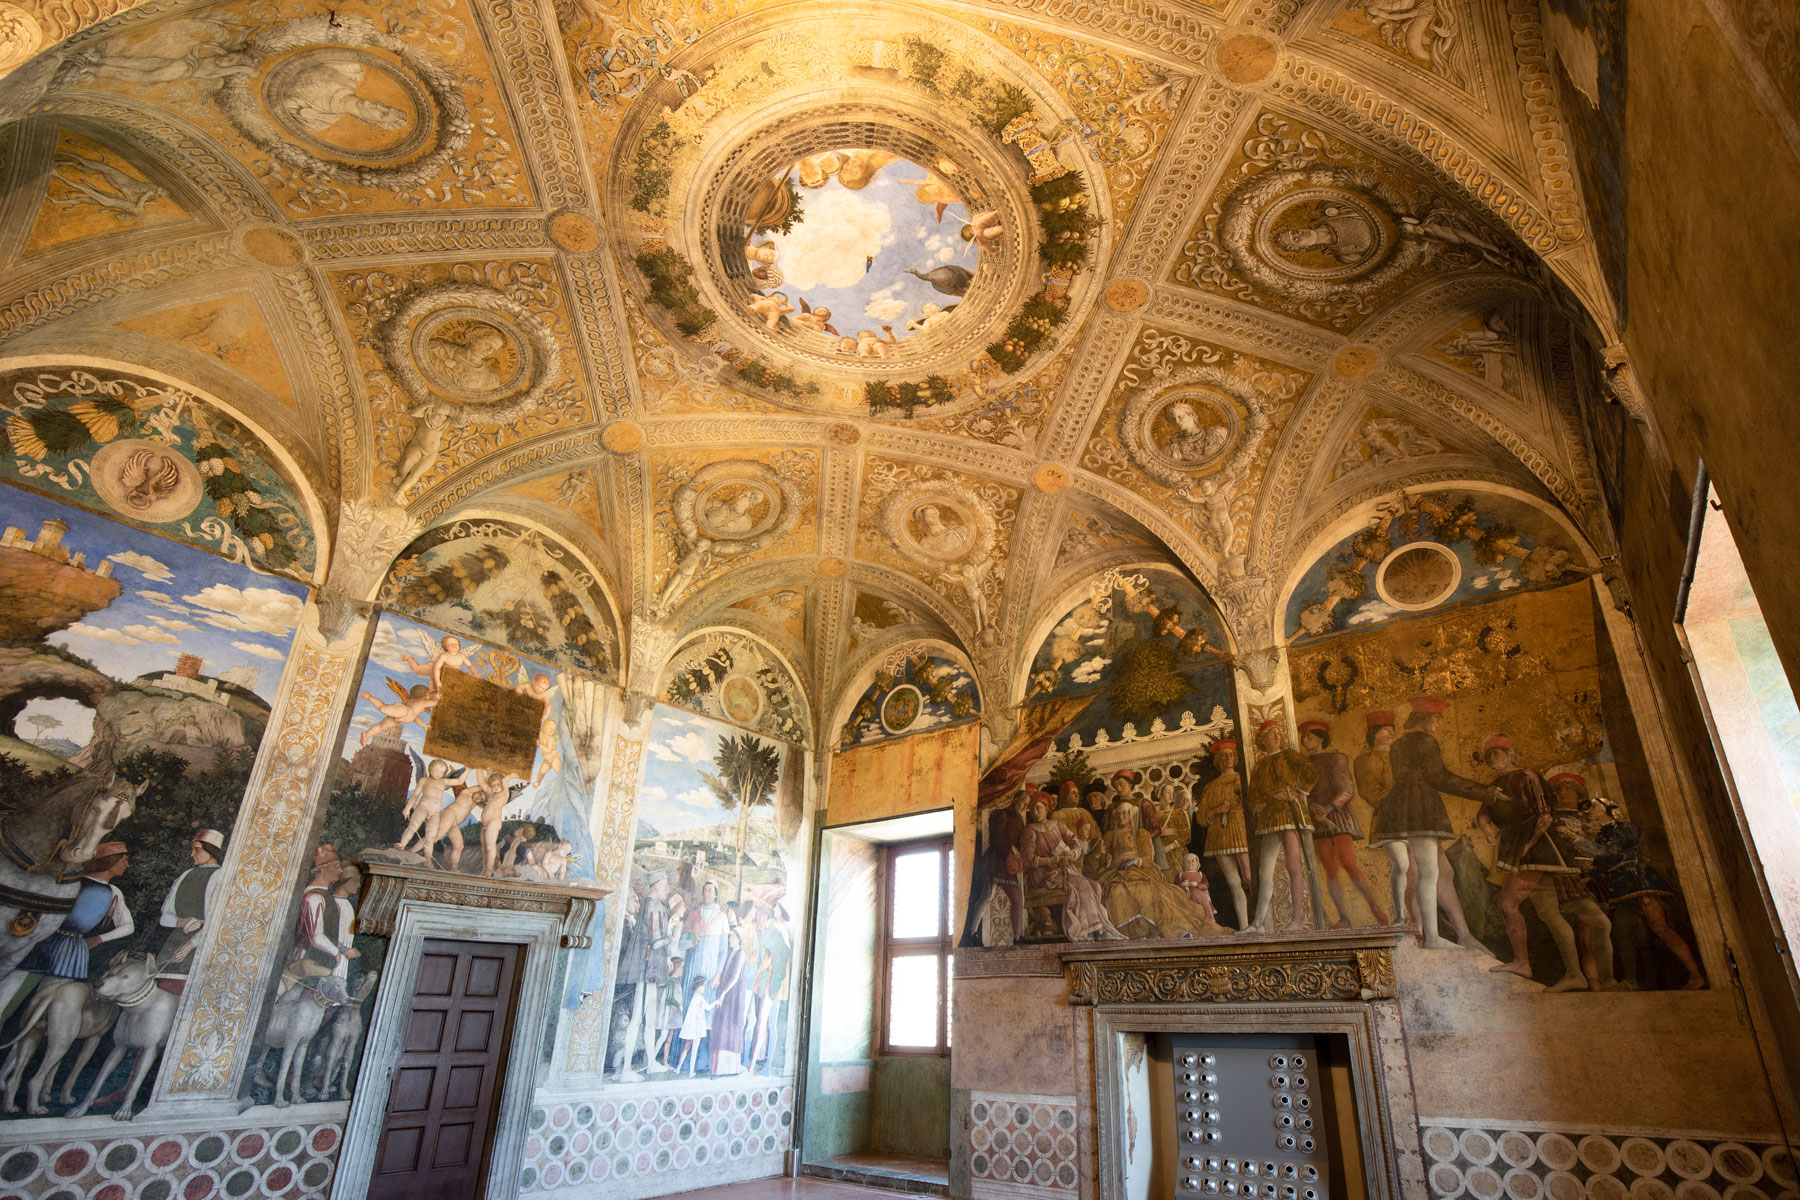 Andrea Mantegna, affreschi della Camera degli Sposi (1465-1474; Mantova, Castello di San Giorgio), veduta dellÂ’ambiente. Ph. Credit Alessandro Pasquali - Danae Project
